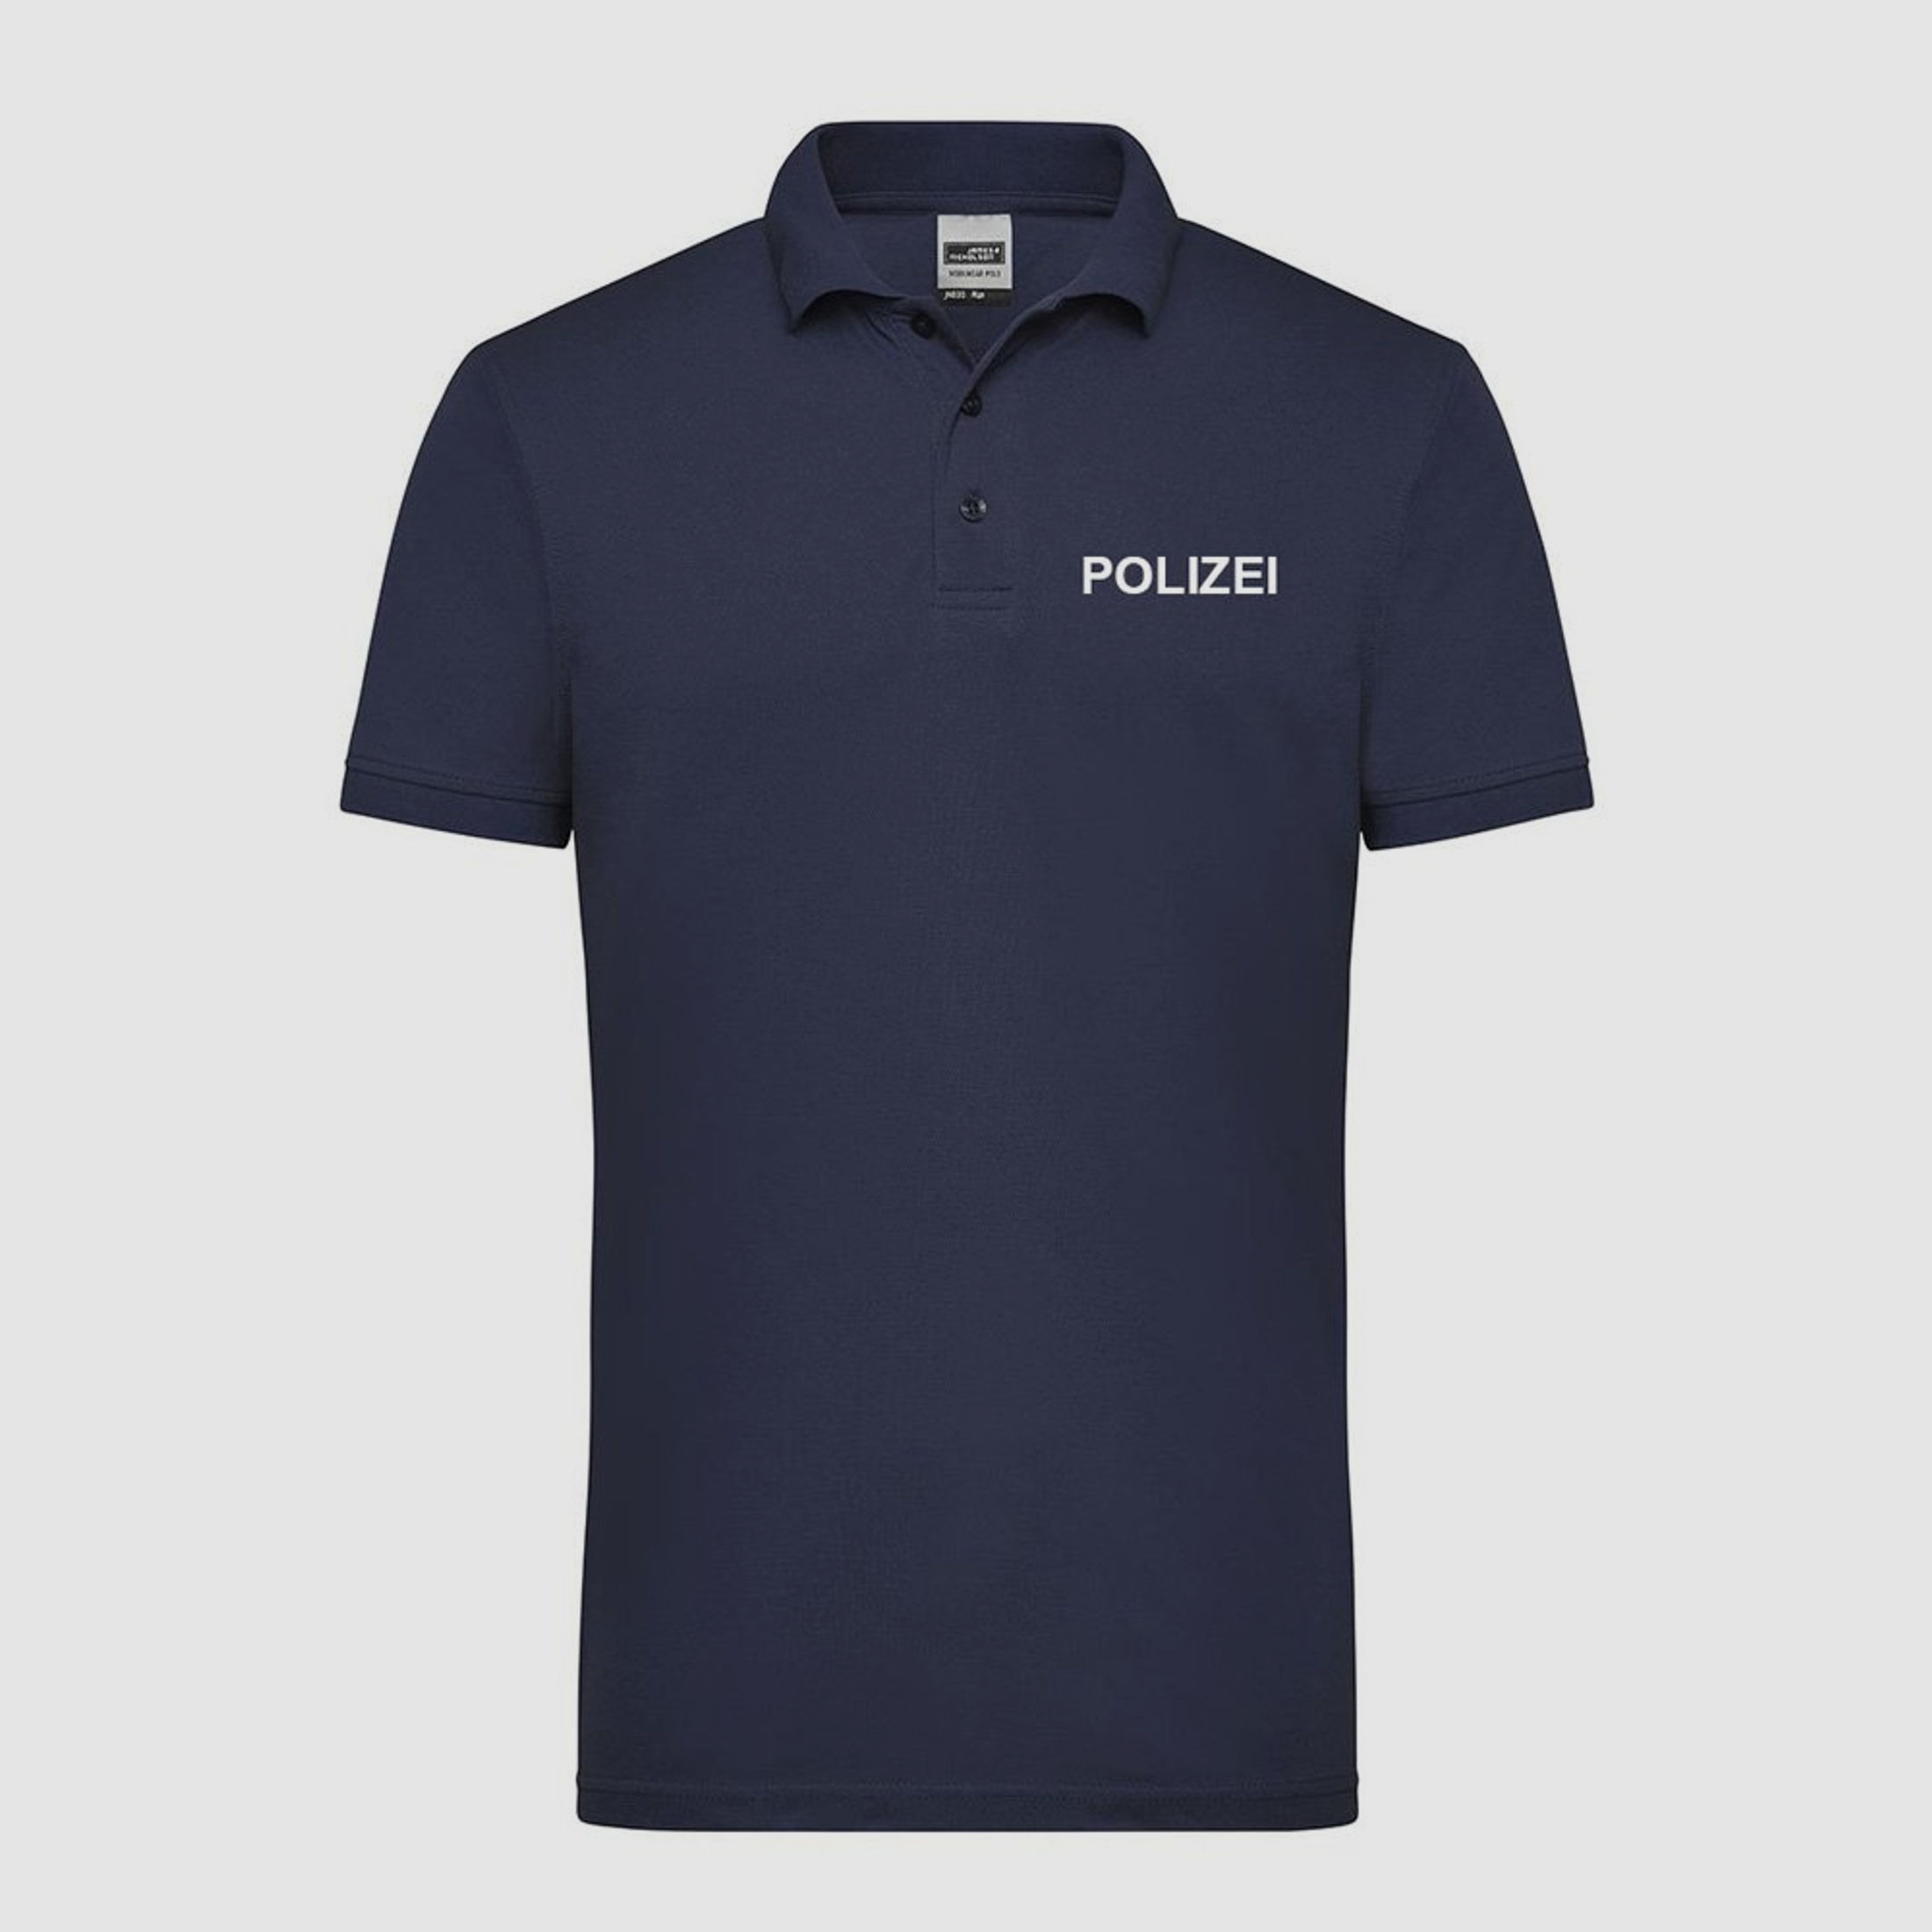 Funktions Polo für Dienst und Sport Navy Blau XL POLIZEI